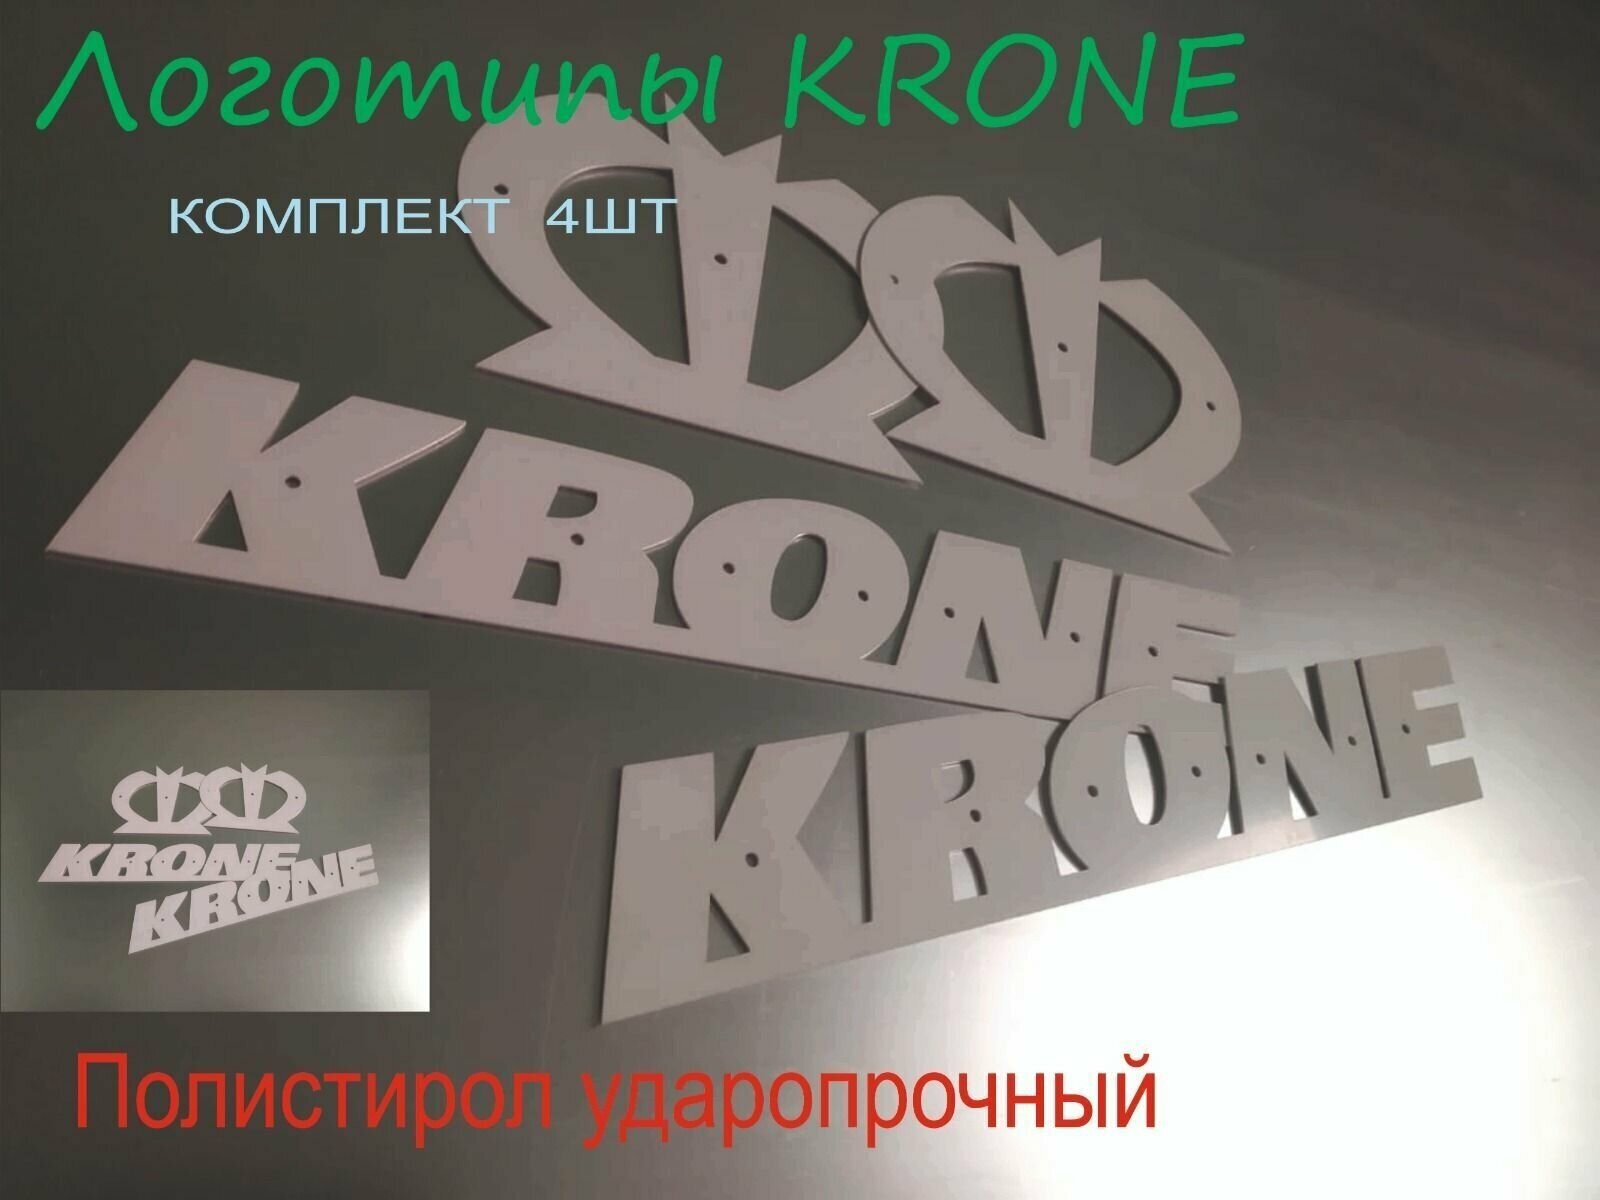 Логотипы KRONE